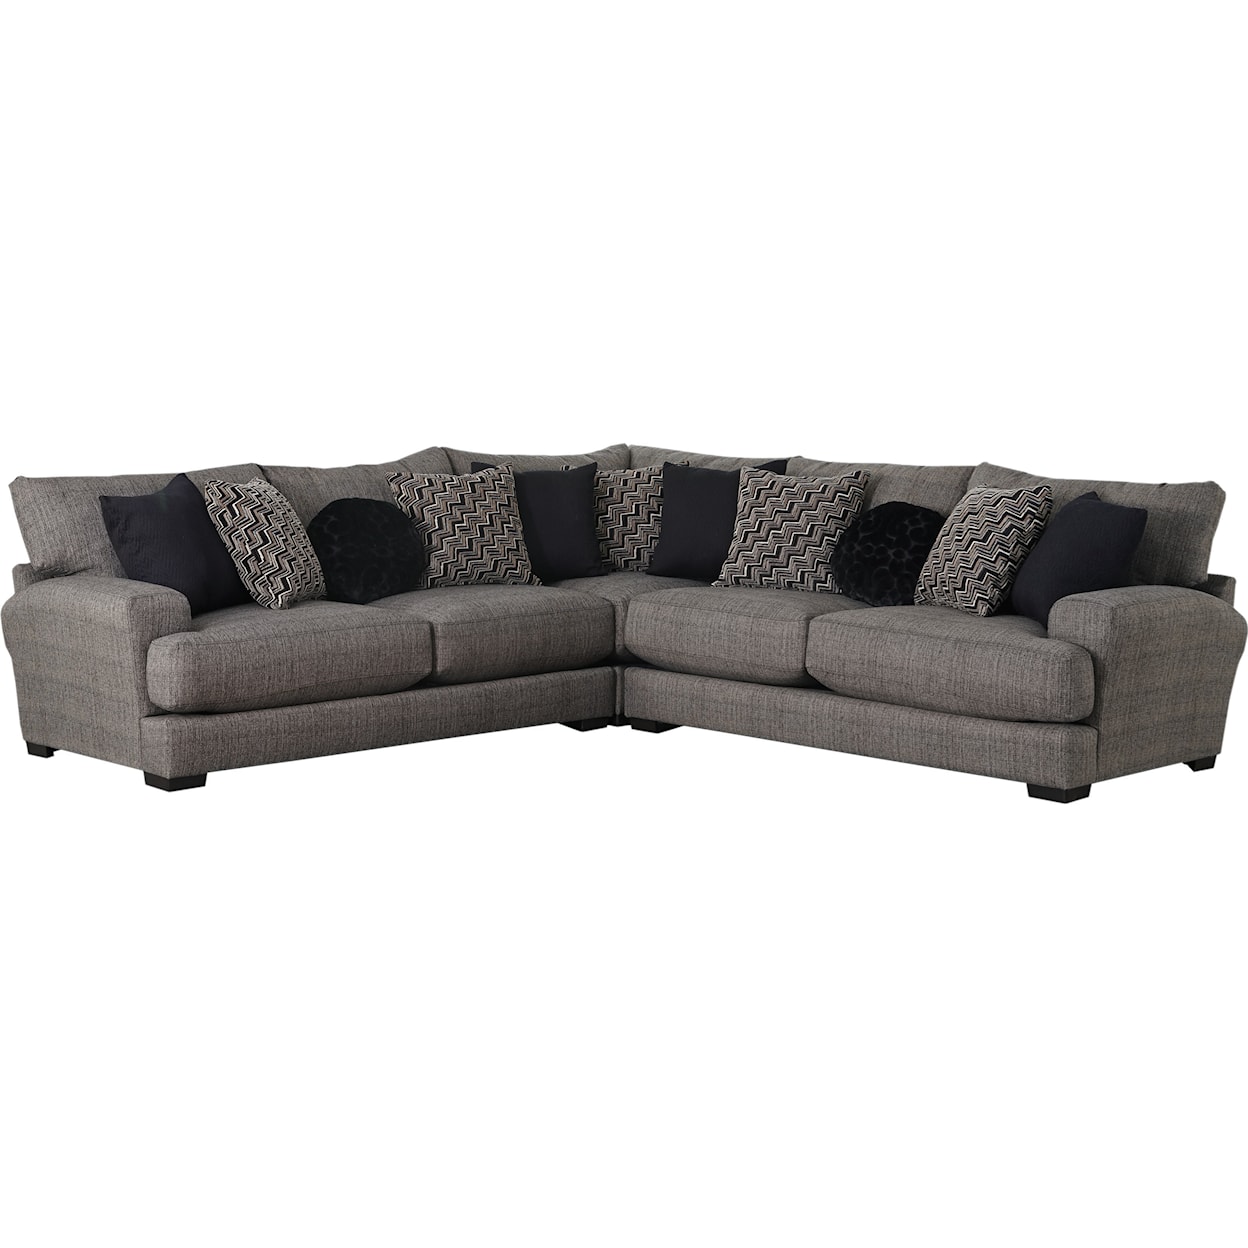 Carolina Furniture 4498 Ava Sectional Sofa with 4 Seats & USB Ports